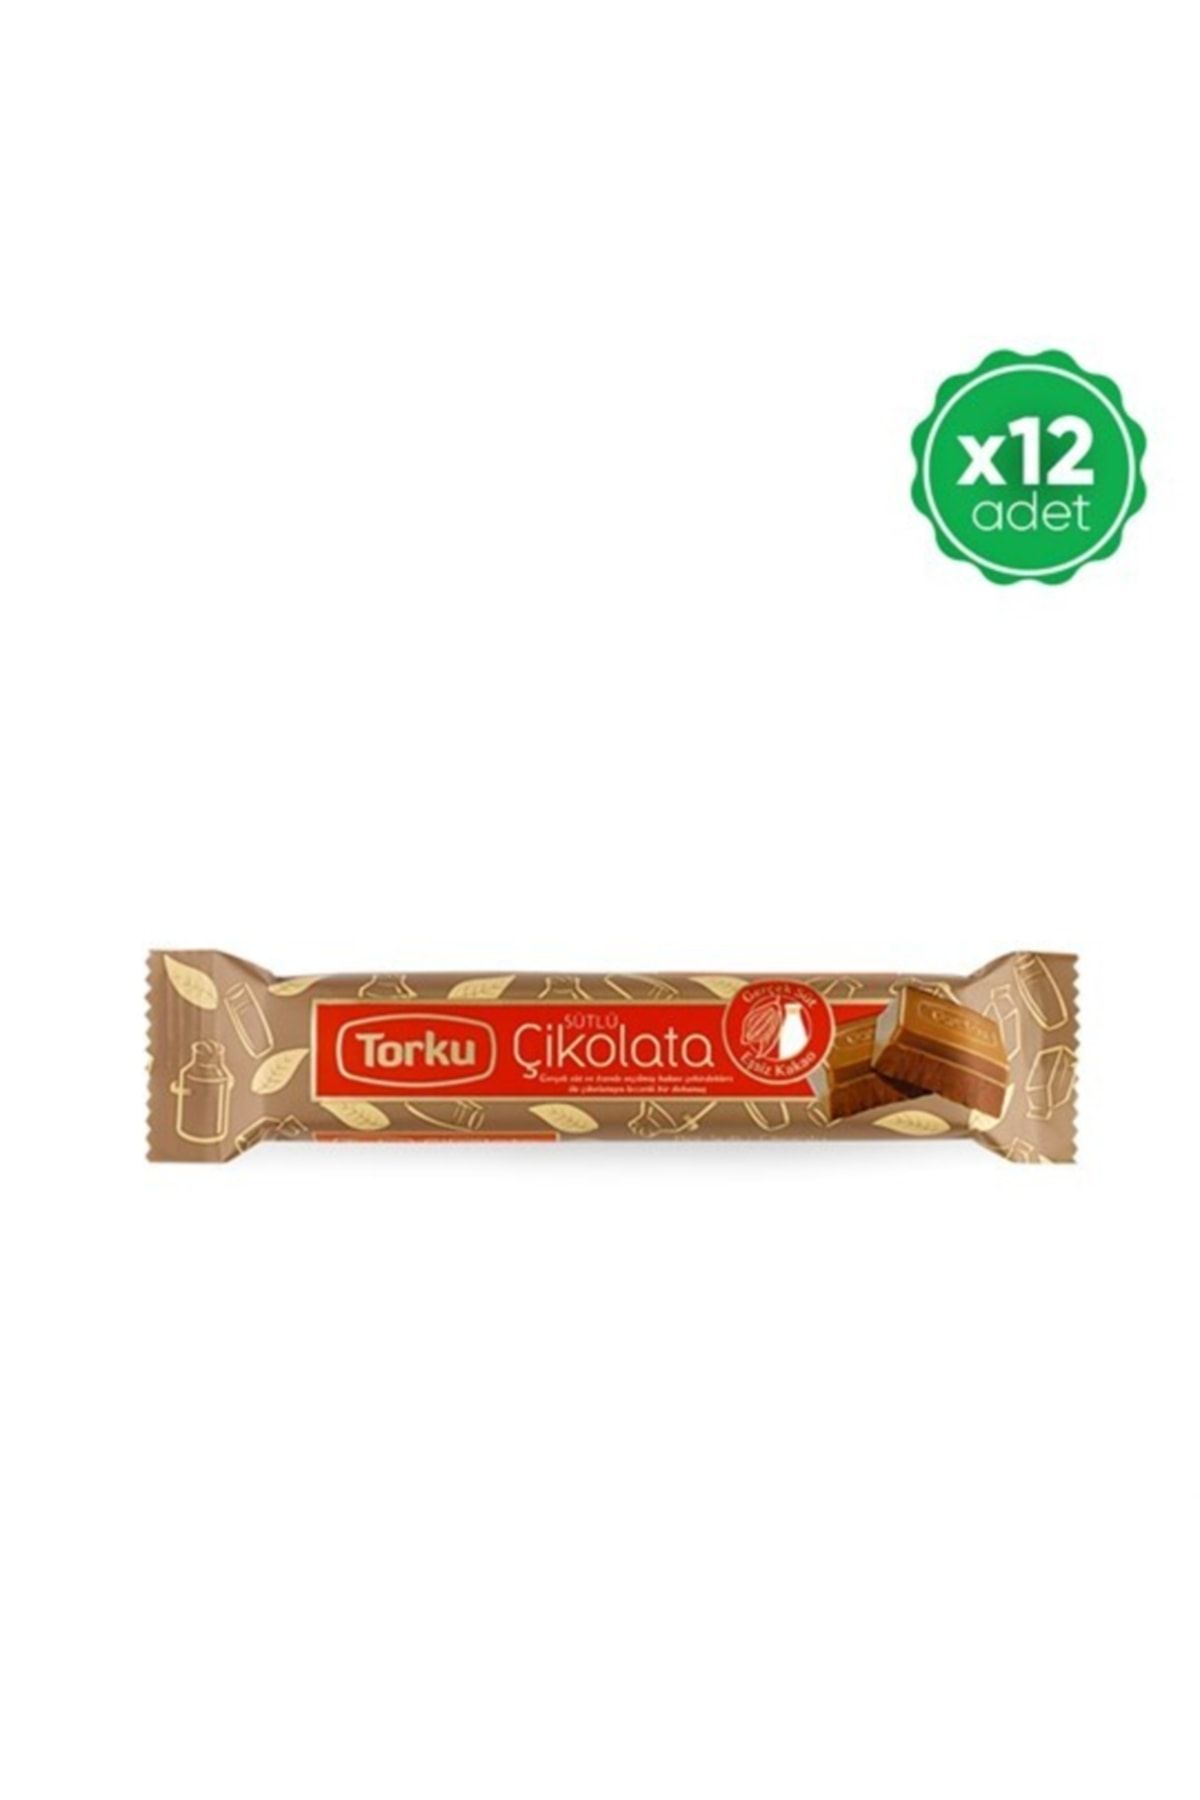 Torku Baton Sütlü Çikolata 30gr X12